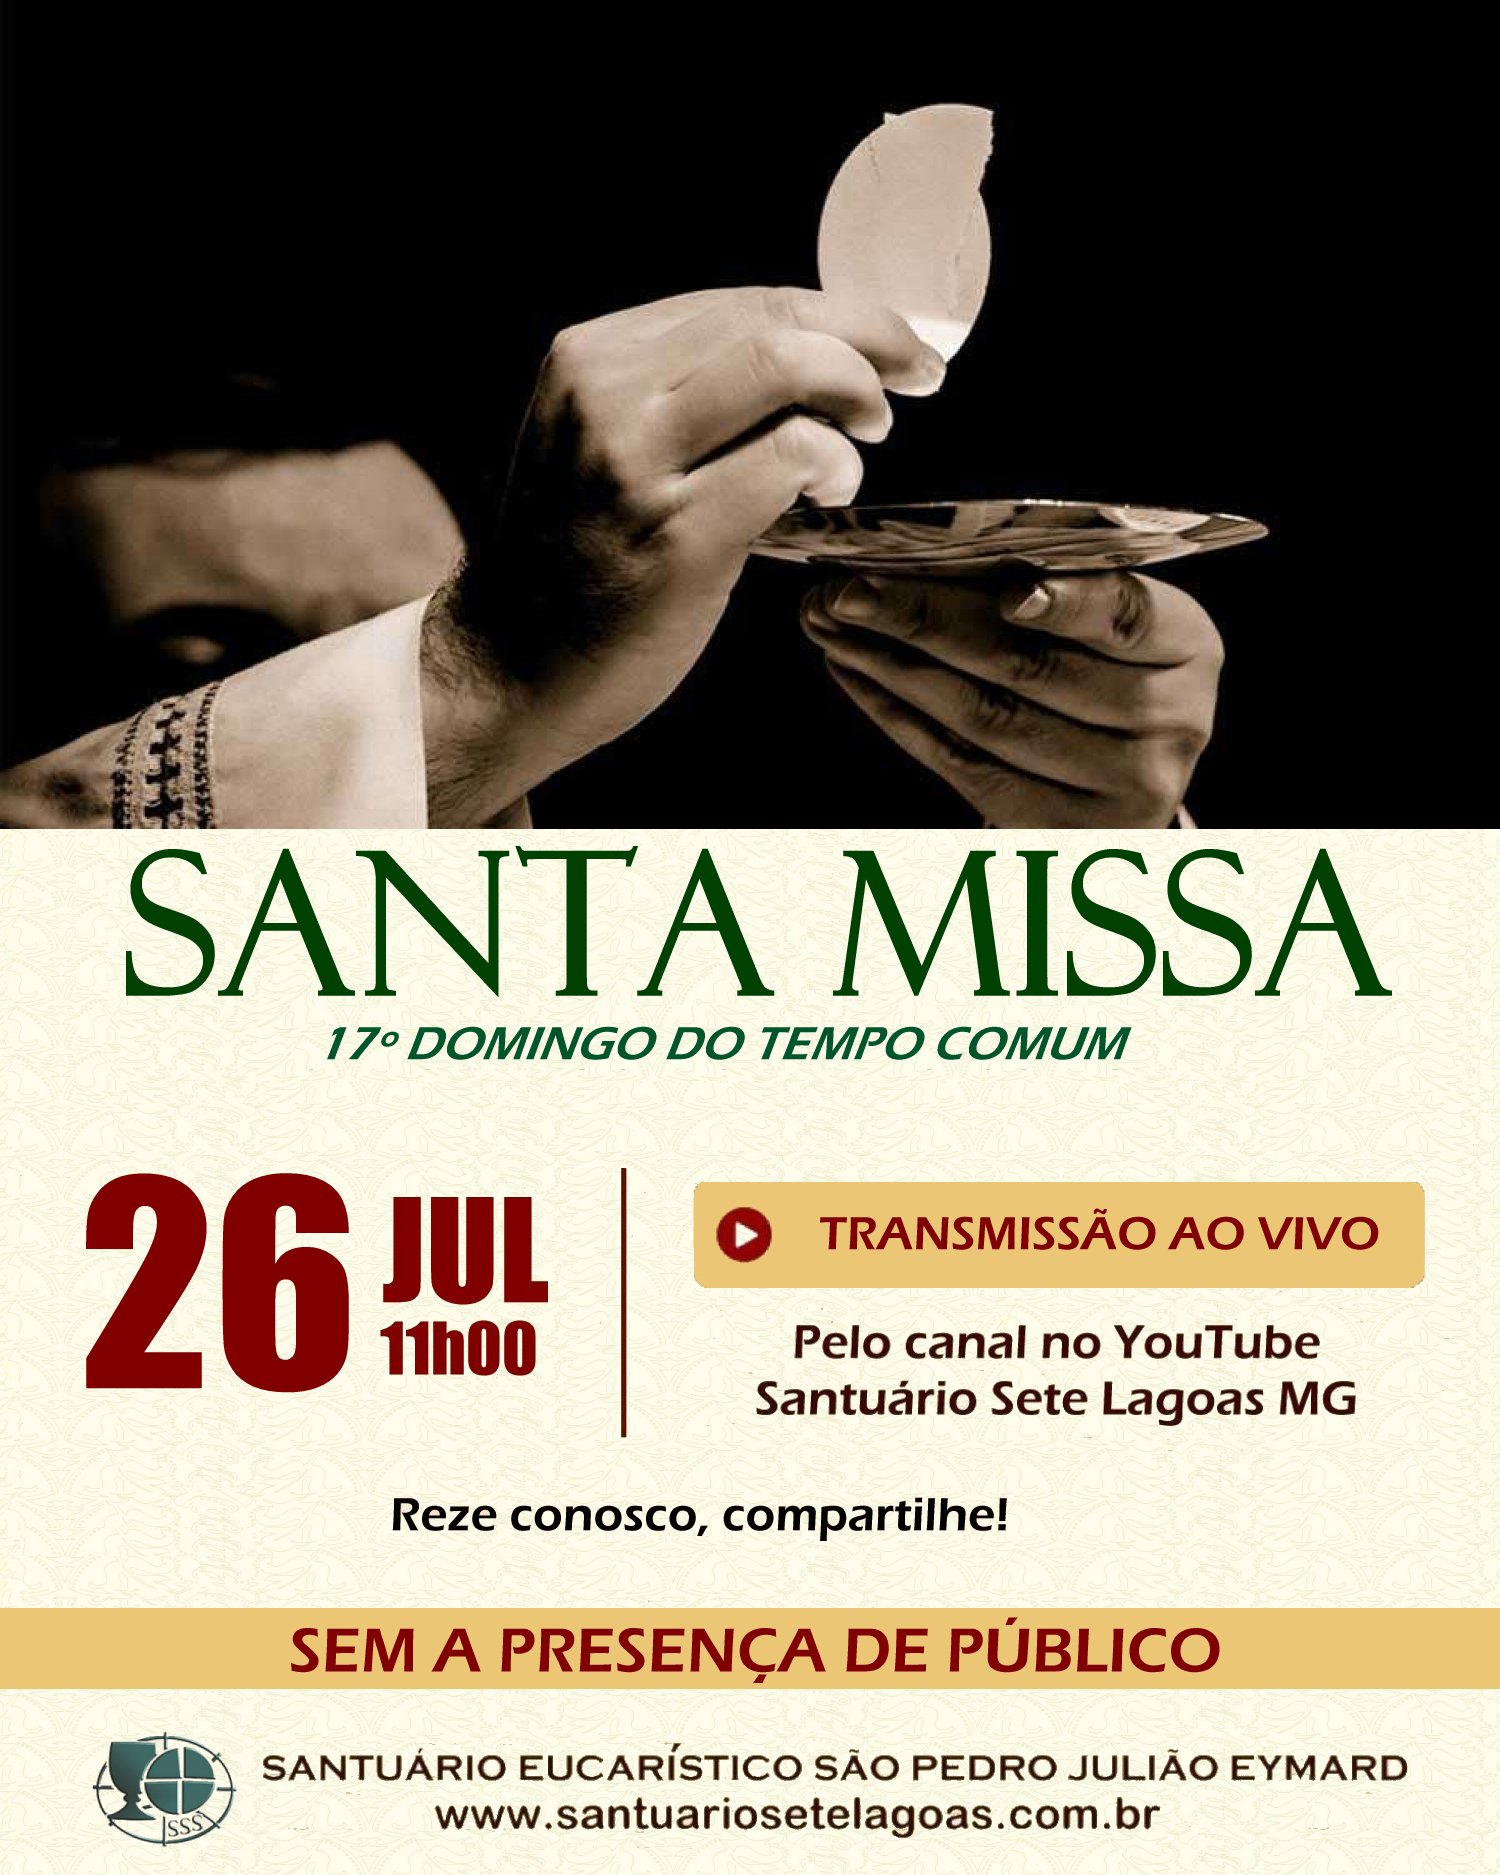 Santa Missa com transmissão ao vivo, 26/07. Participe!